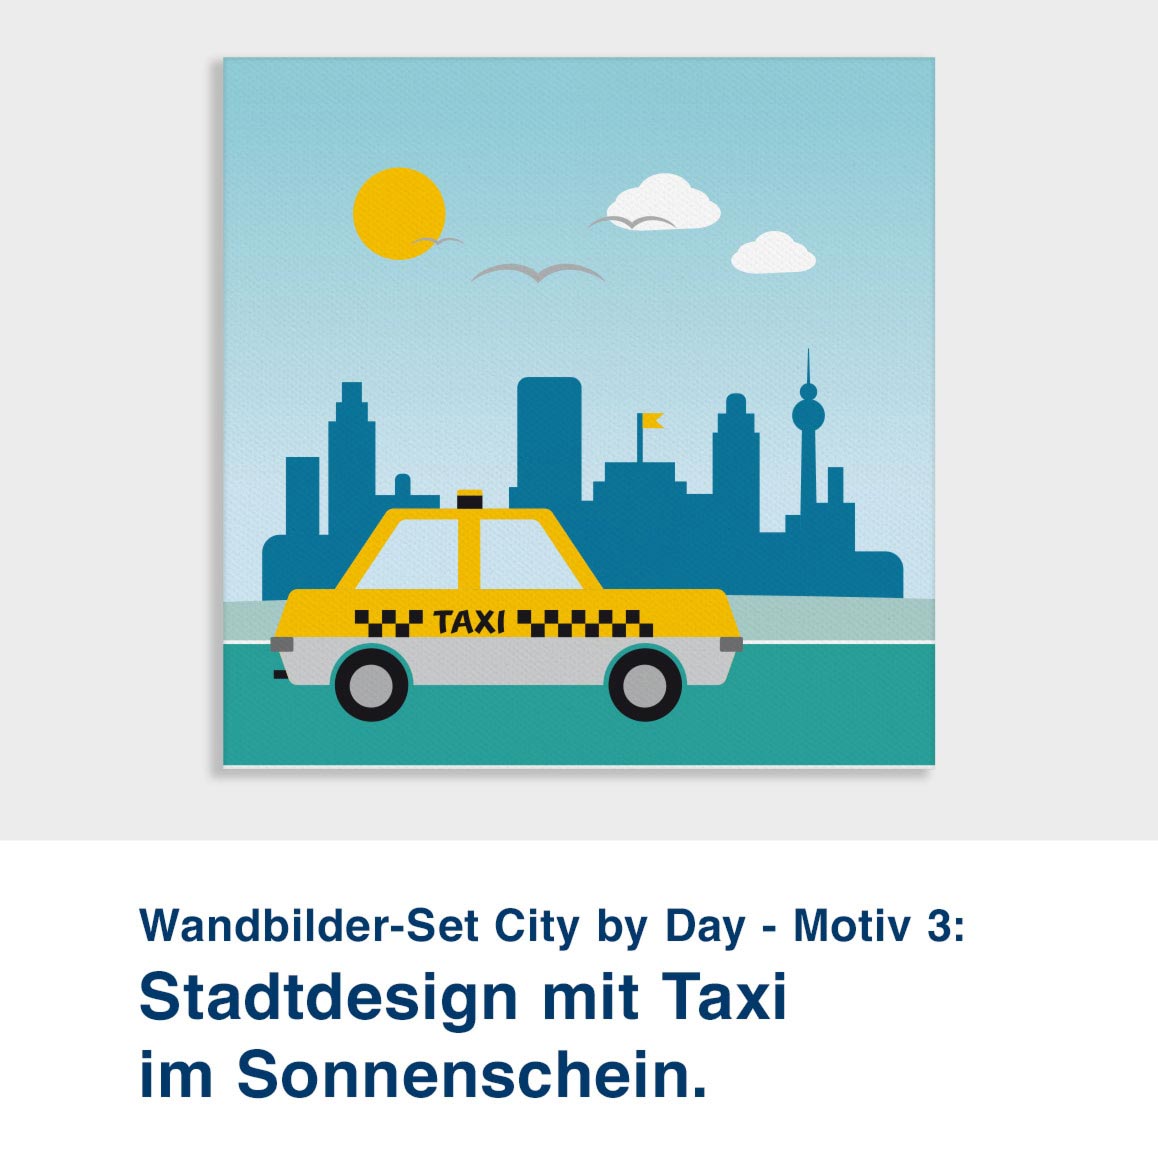 Wandbilder-Set City by Day - Motiv 3:  Stadtdesign mit Taxi im Sonnenschein.